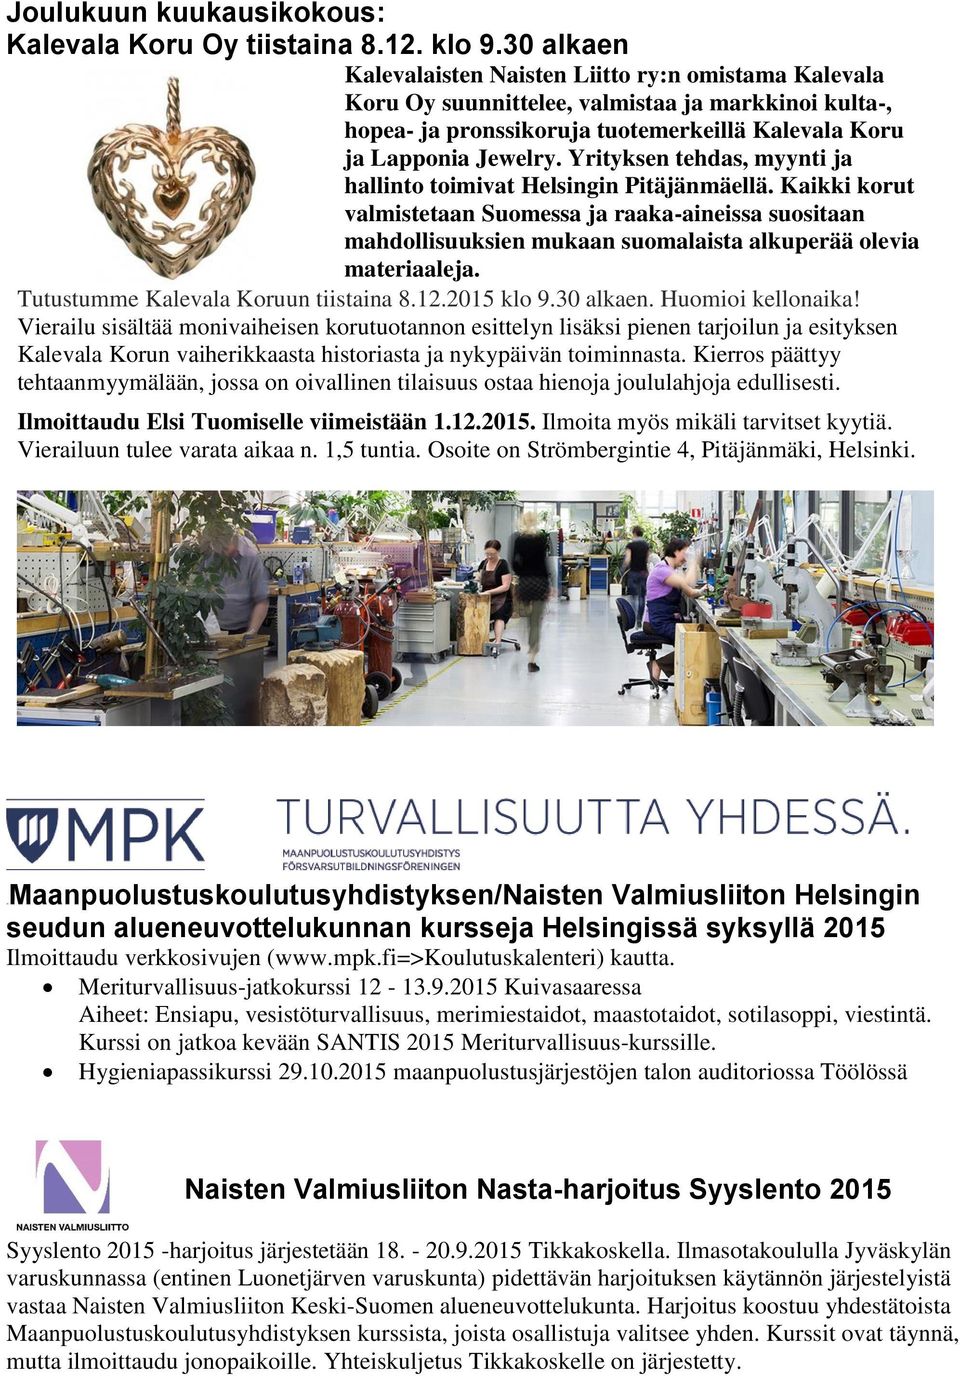 Yrityksen tehdas, myynti ja hallinto toimivat Helsingin Pitäjänmäellä. Kaikki korut valmistetaan Suomessa ja raaka-aineissa suositaan mahdollisuuksien mukaan suomalaista alkuperää olevia materiaaleja.